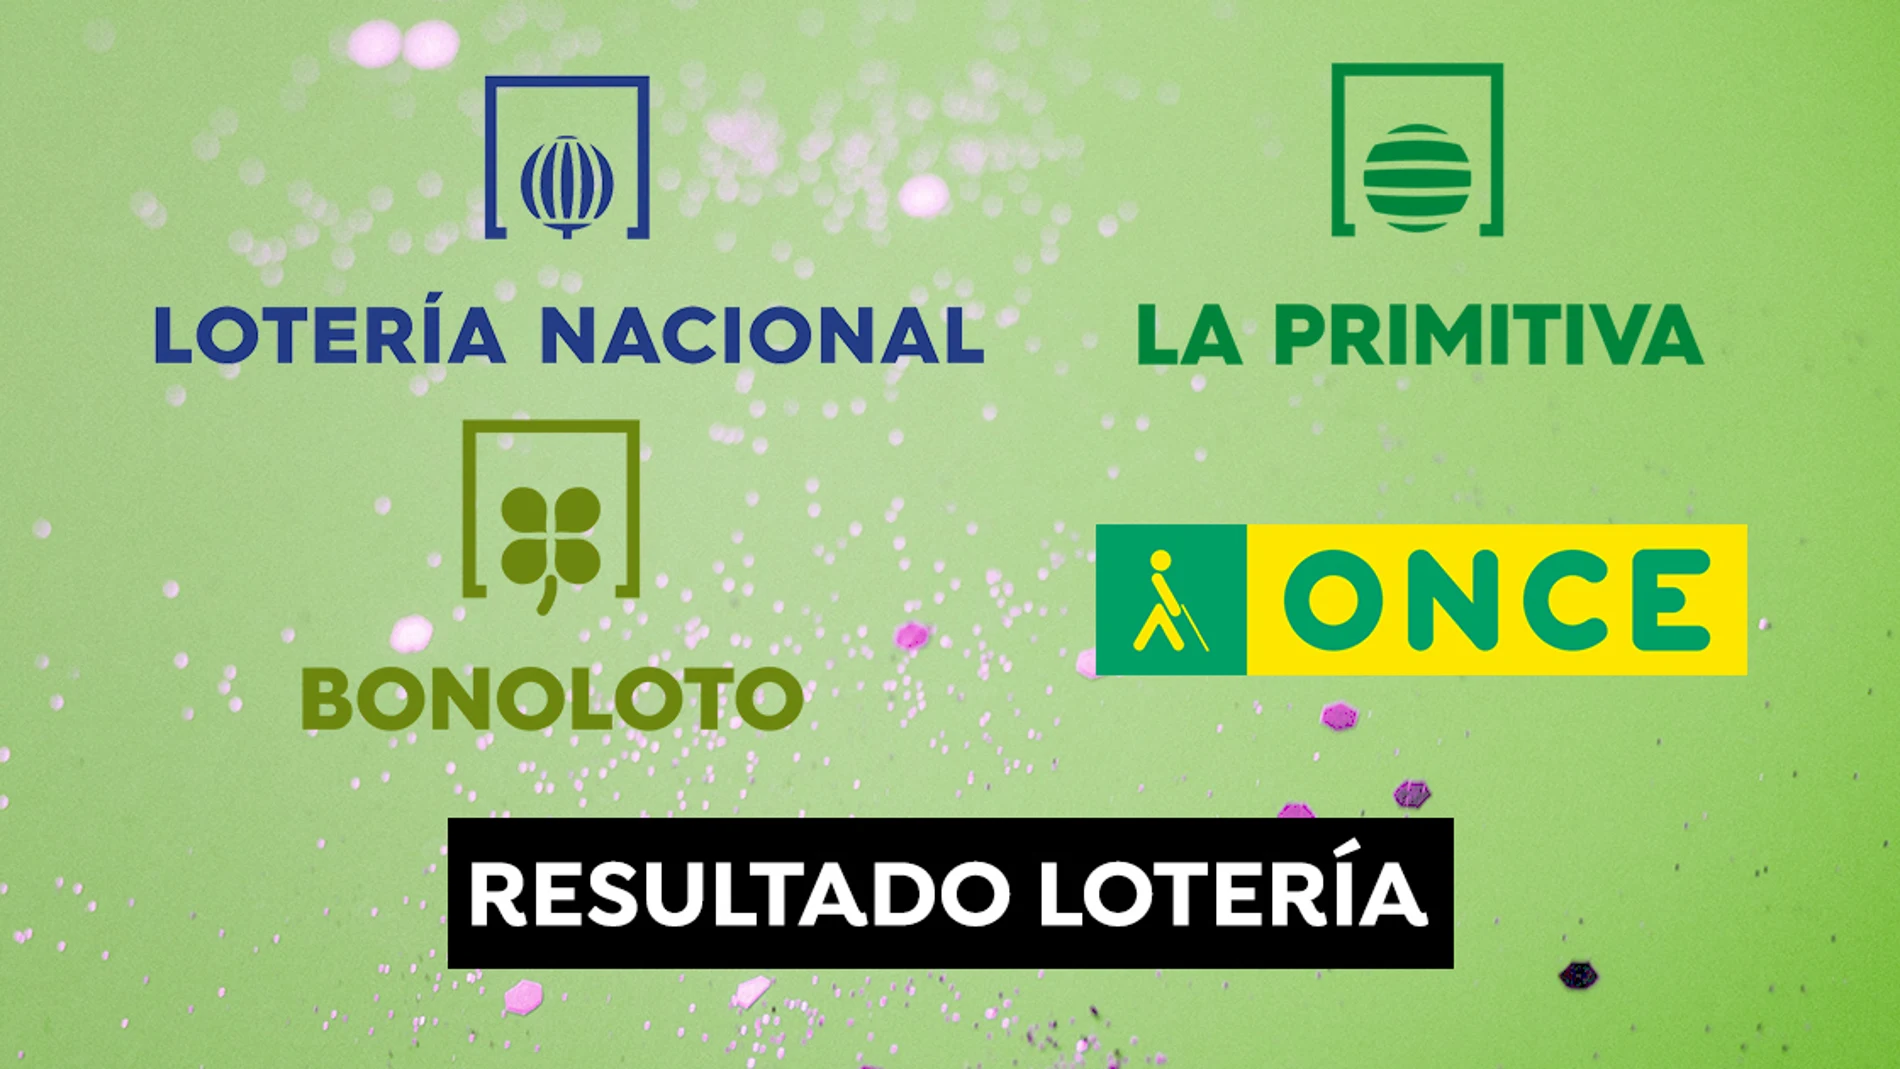 Comprueba los resultados de La Primitiva, la Bonoloto y Lotería Nacional.